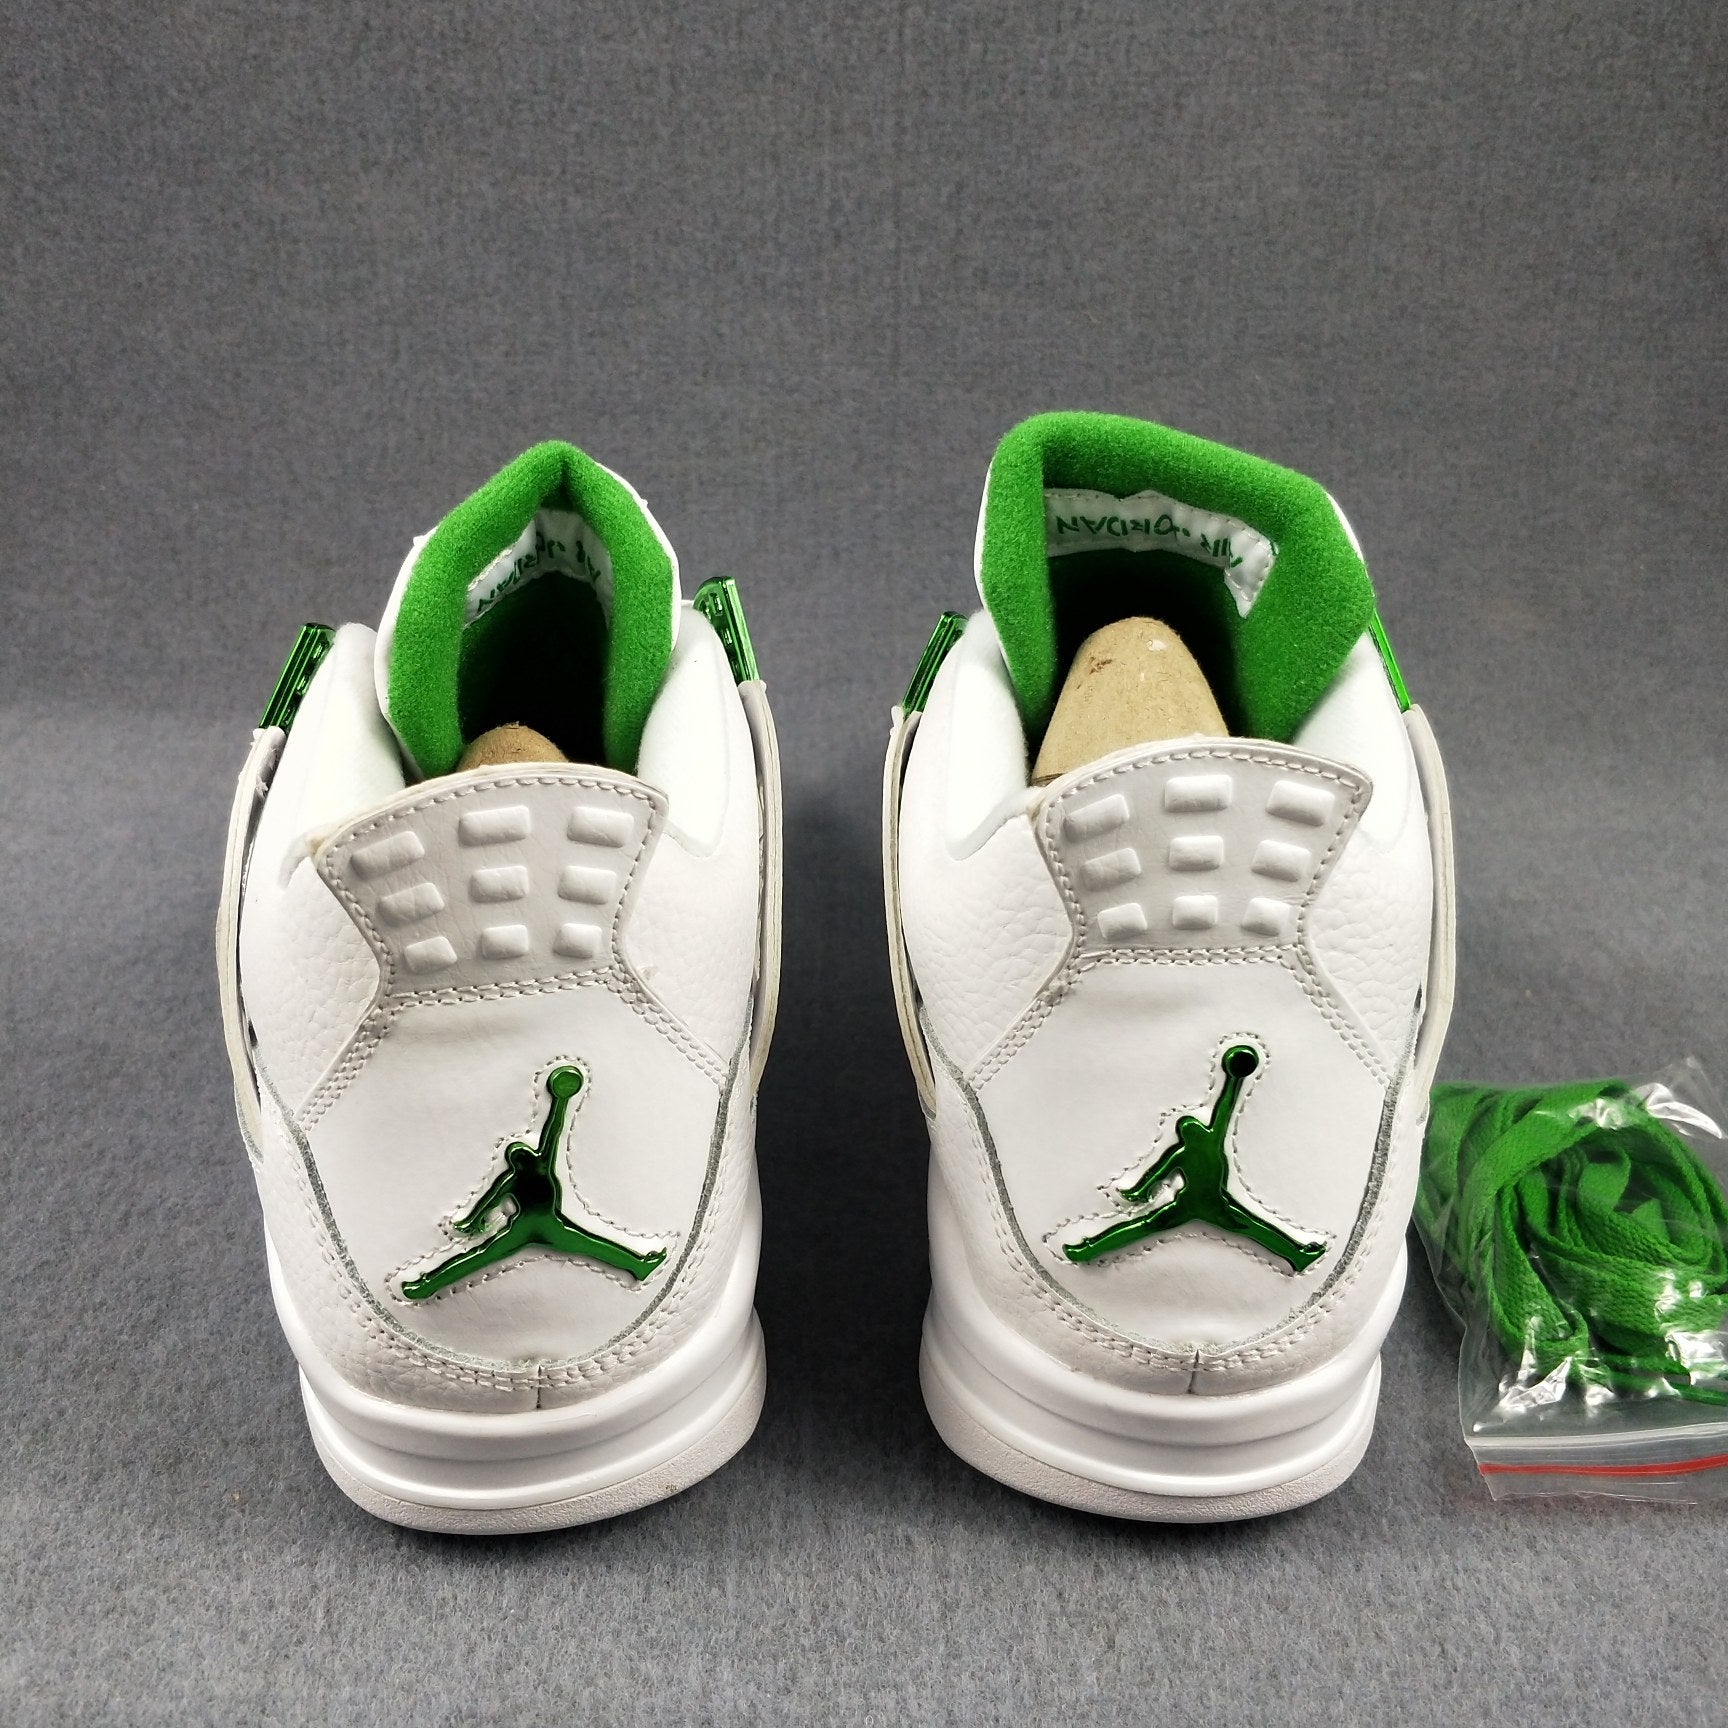 Nike Air Jordan 4 Retro AJ4 Men's and Women's Sneakers Shoes